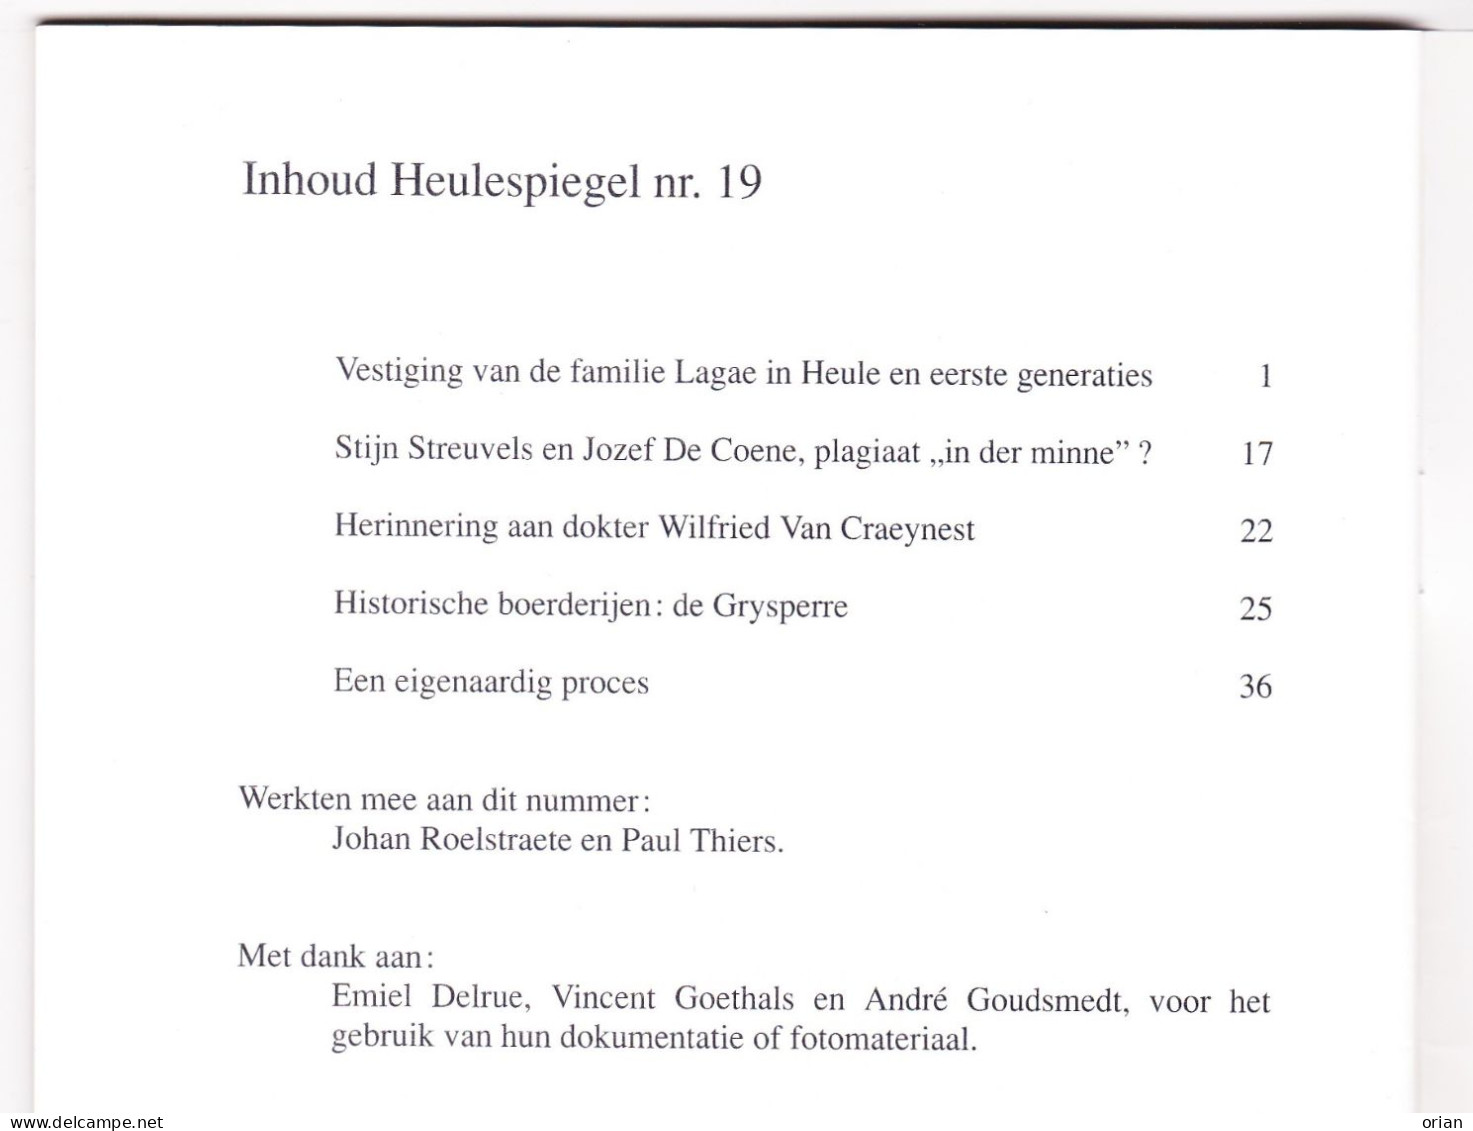 2 X Heulespiegel - Heemk. Bijdrage - Tijdschriftjes Nrs 19 & 20 Uit 1994 - Fam. Lagae / Streuvels / Preetjes Molen Heule - History